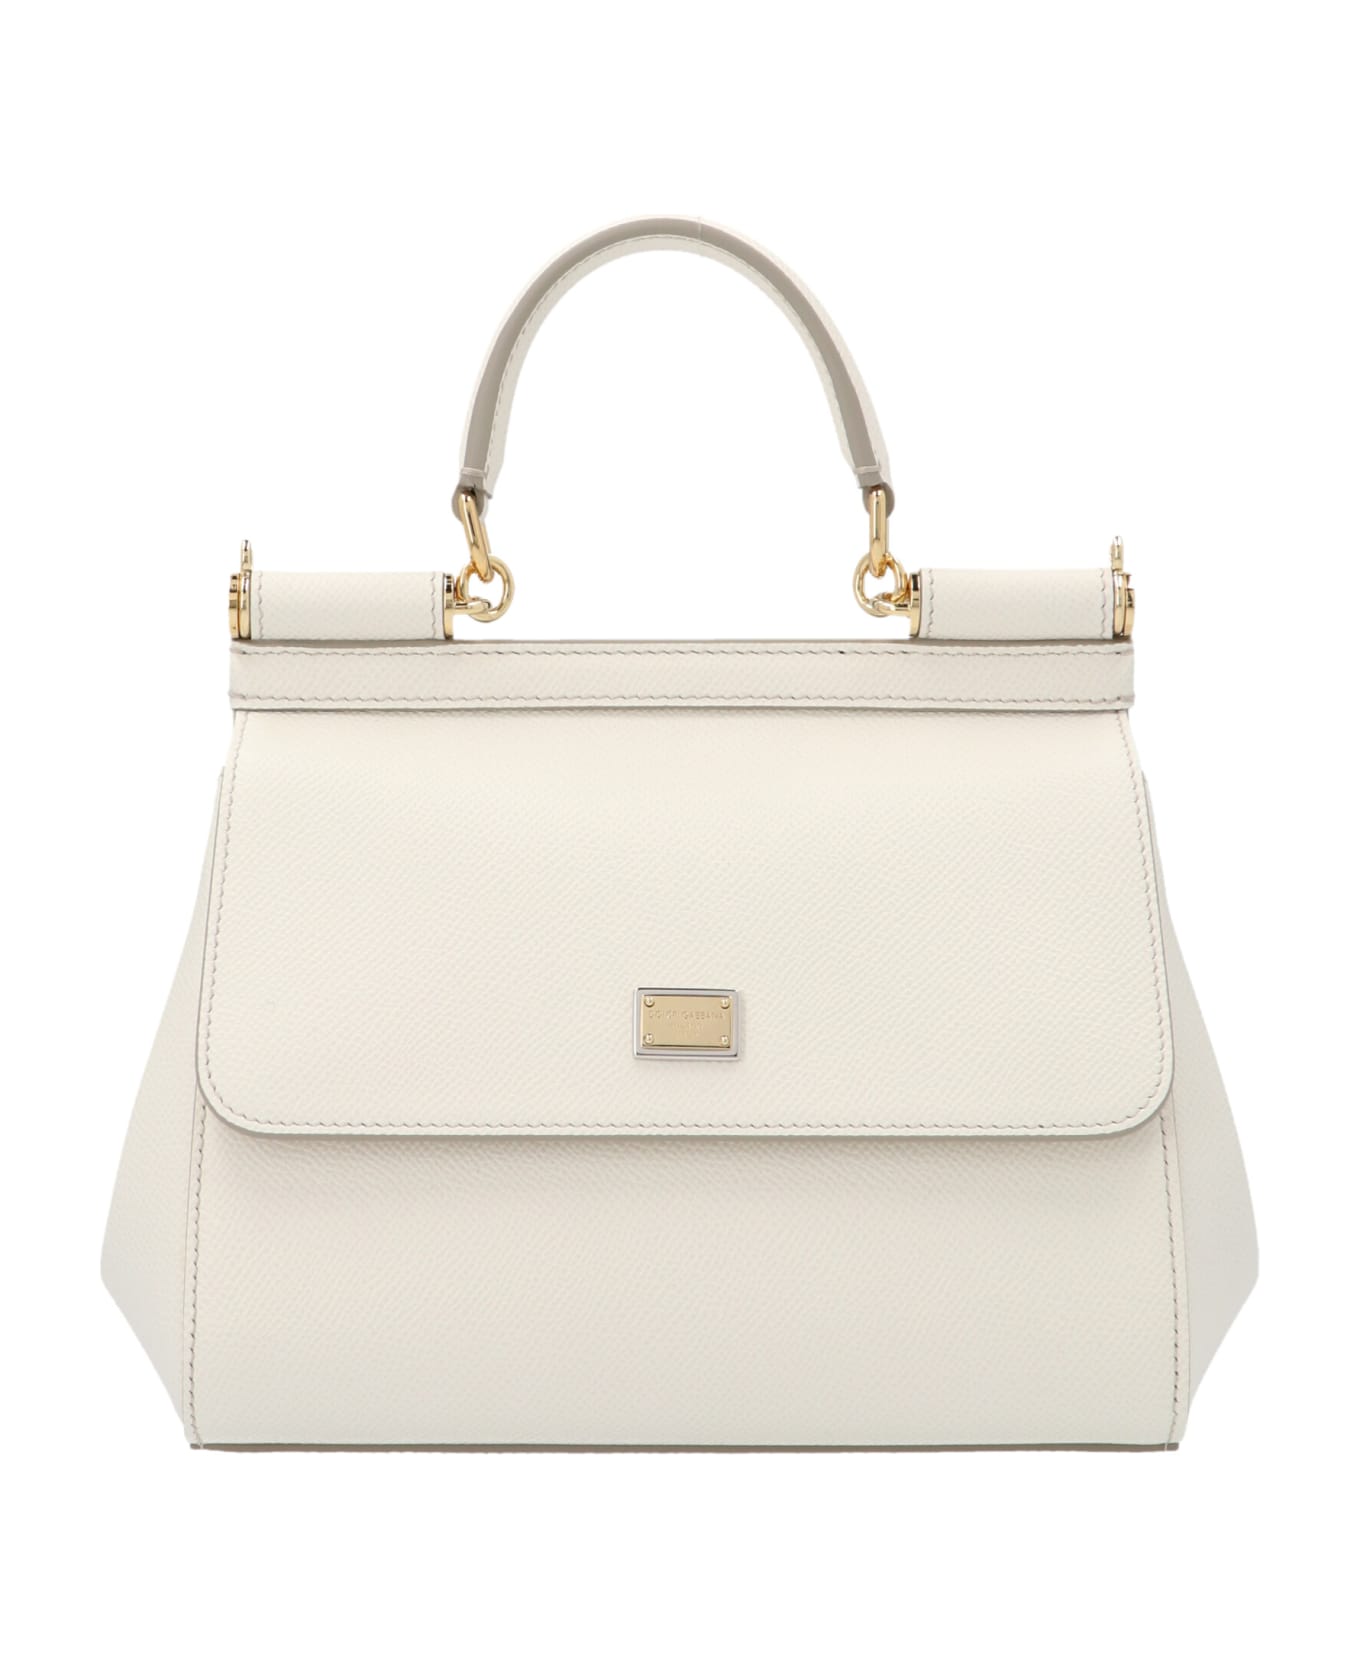 Dolce & Gabbana Sicily Handbag Mini - White